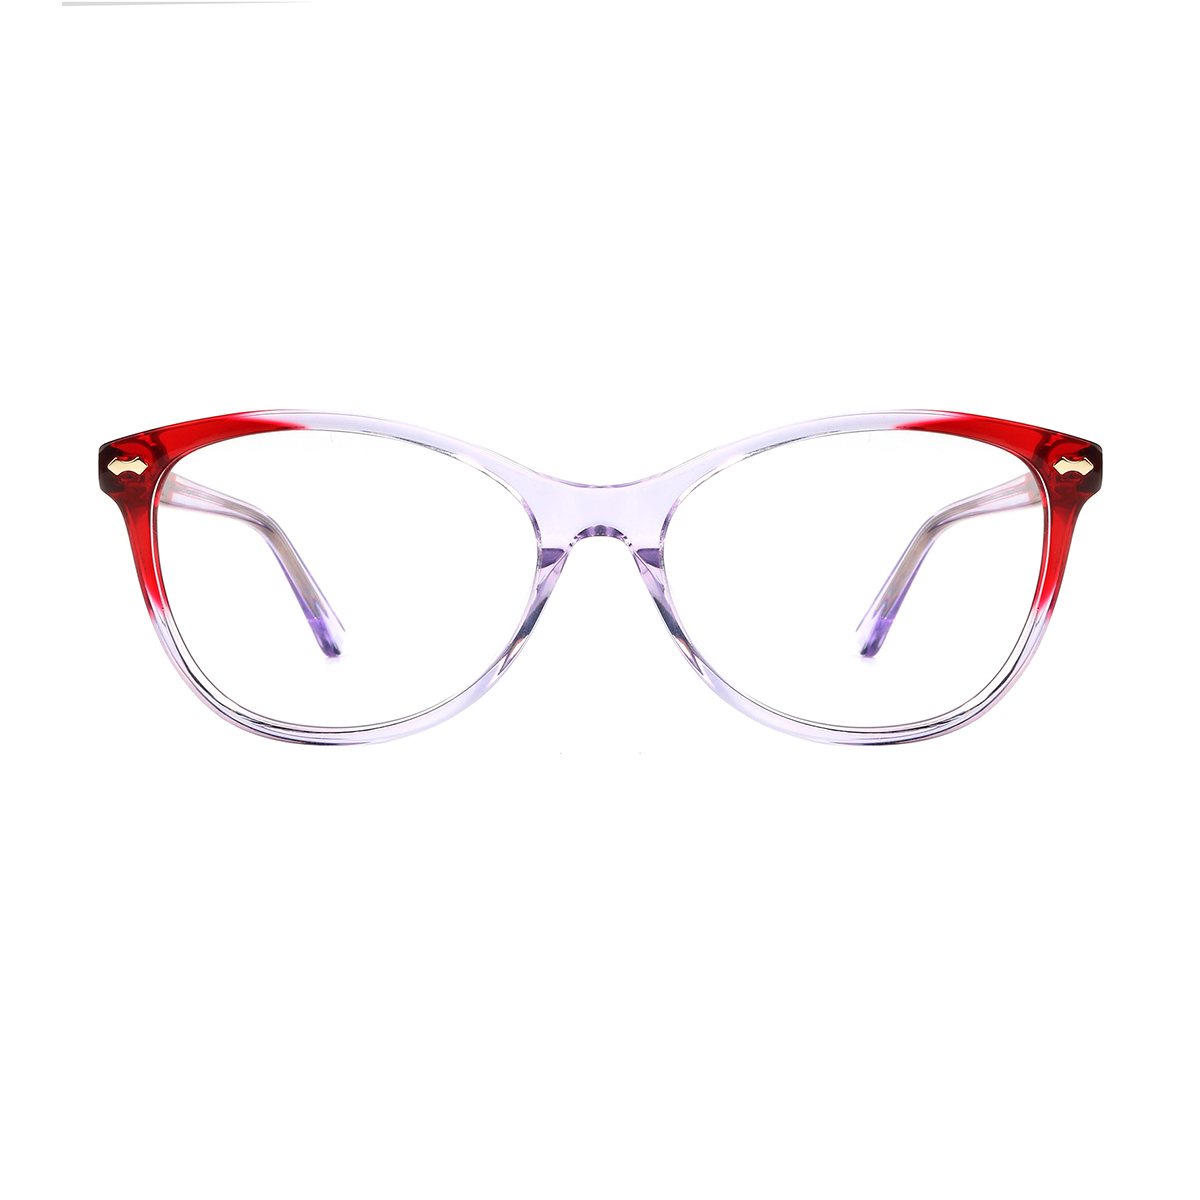 oval transparent eyeglasses